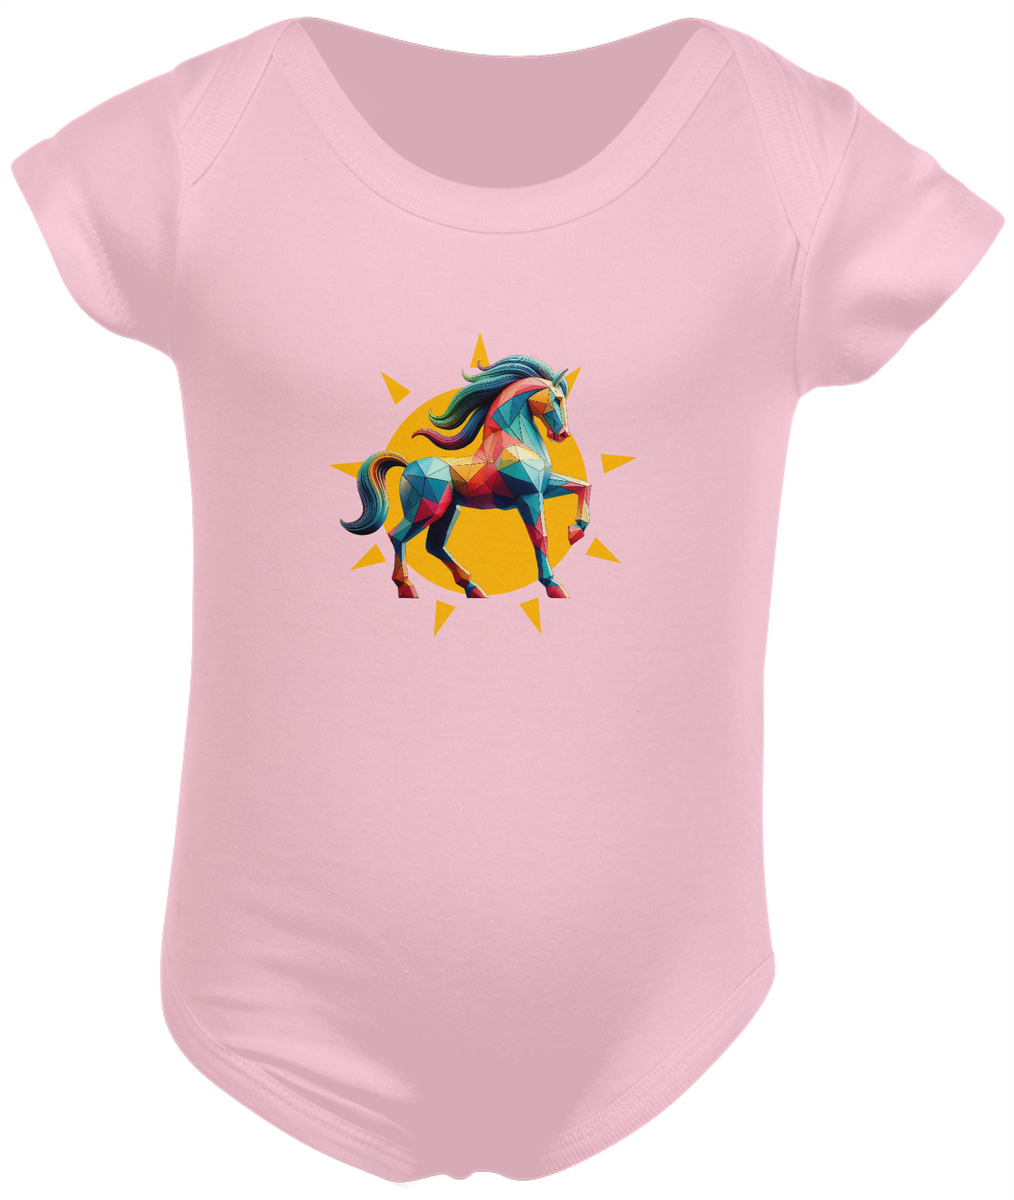 Nome do produto: Cavalo geométrico - Bebê